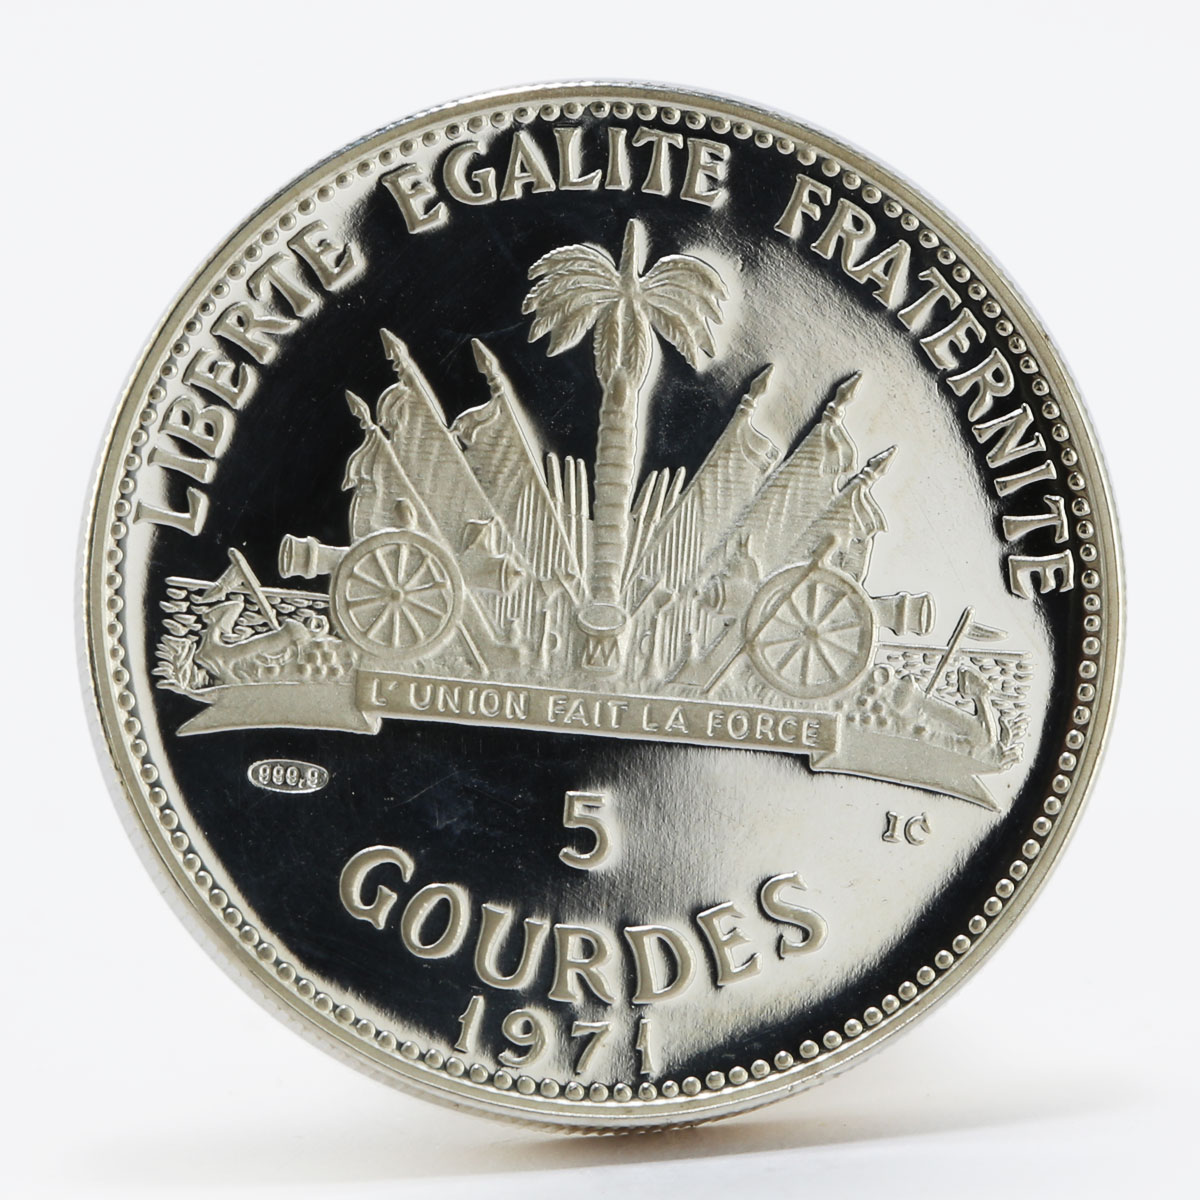 Haiti 5 Gourdes Haitienne paradise proof silver coin 1971